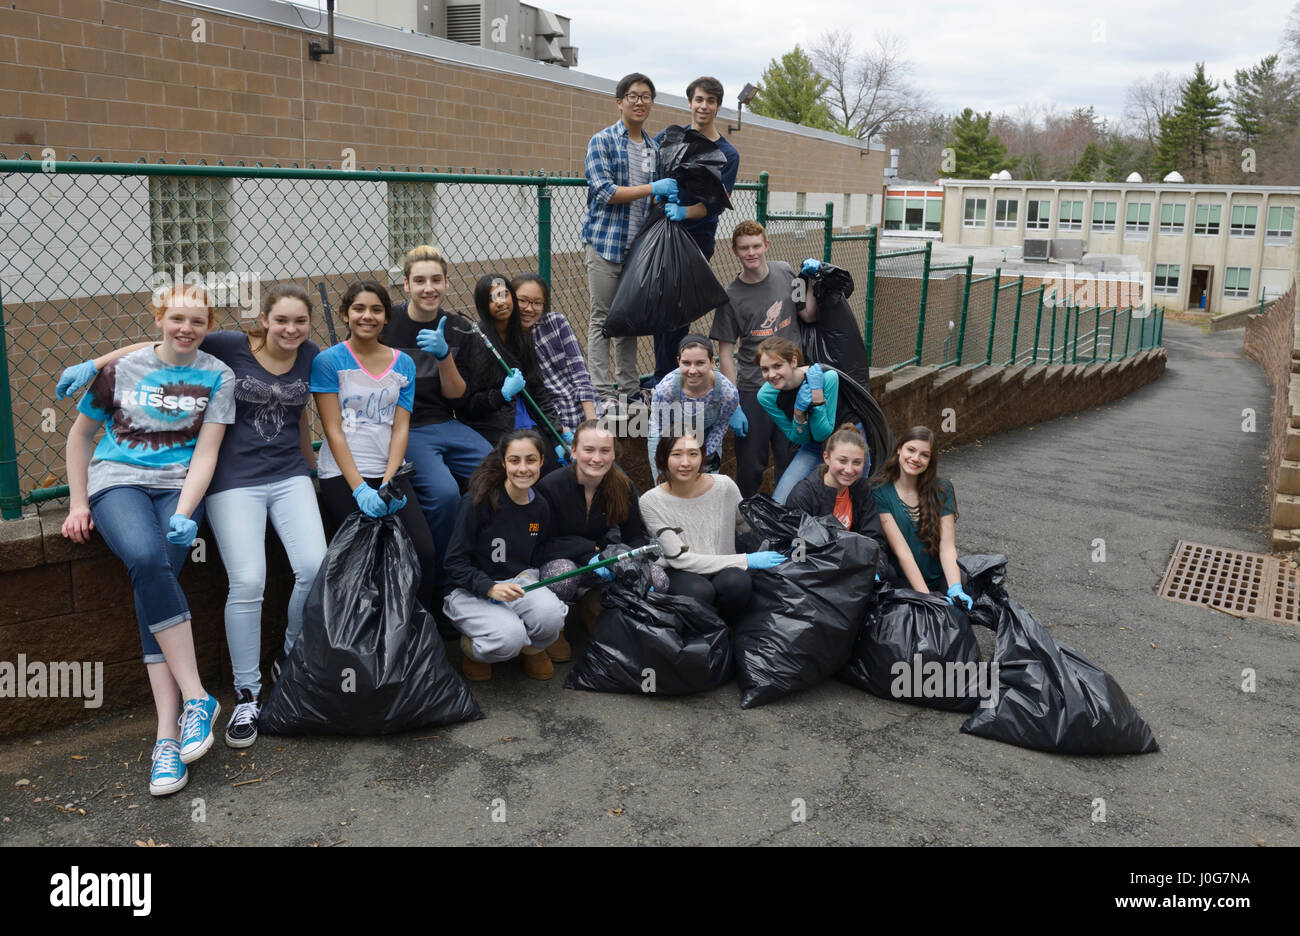 Les élèves du secondaire après un service de bénévolat communautaire Projet de nettoyage de l'école avec des sacs de litière Banque D'Images